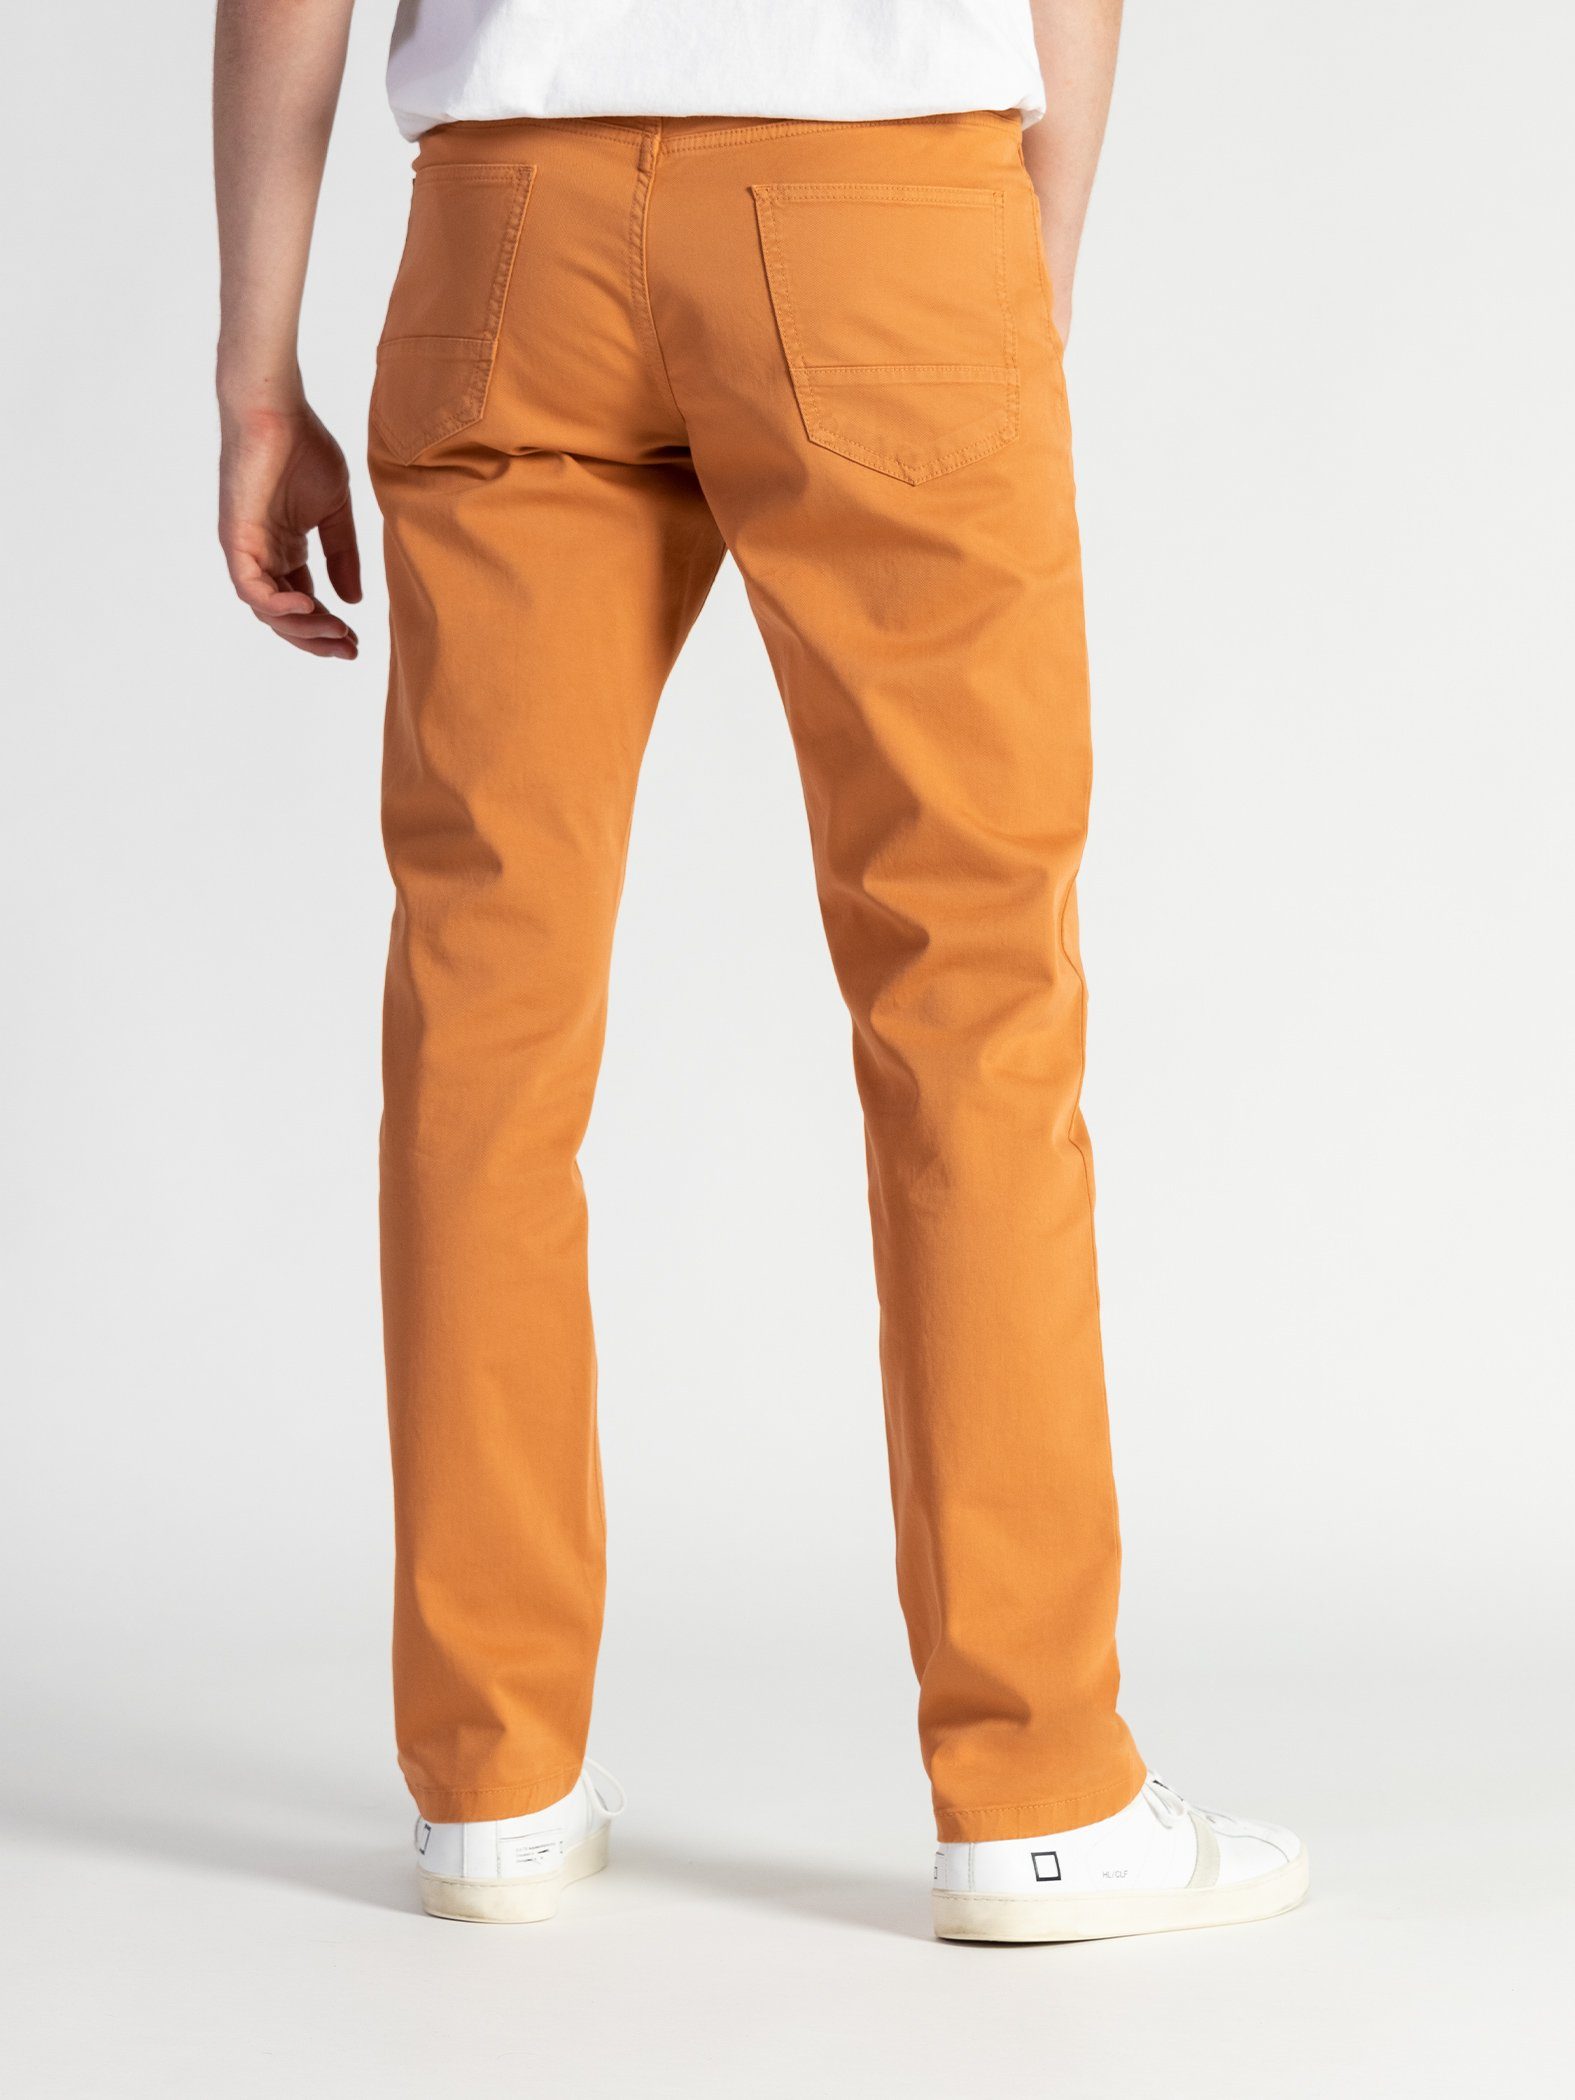 TwoMates Stoffhose GOTS-zertifiziert Orange mit elastischem Bund, 5-Pocket Farbauswahl,